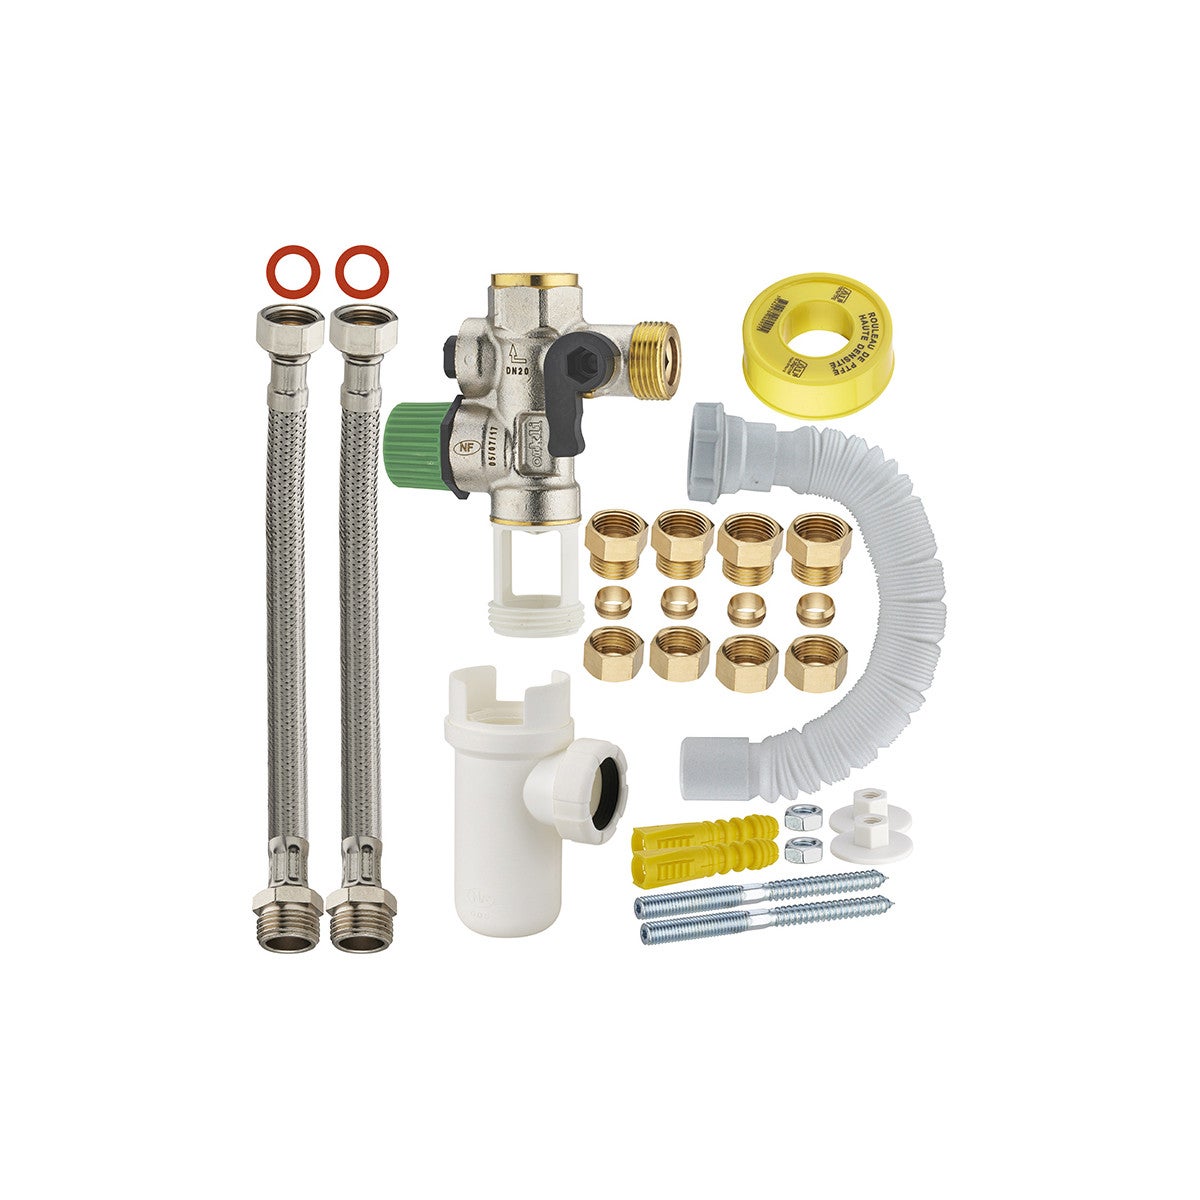 Kit complet d'installation chauffe-eau avec Groupe de sécurité - accessoire  chauffe-eau électrique - Watts